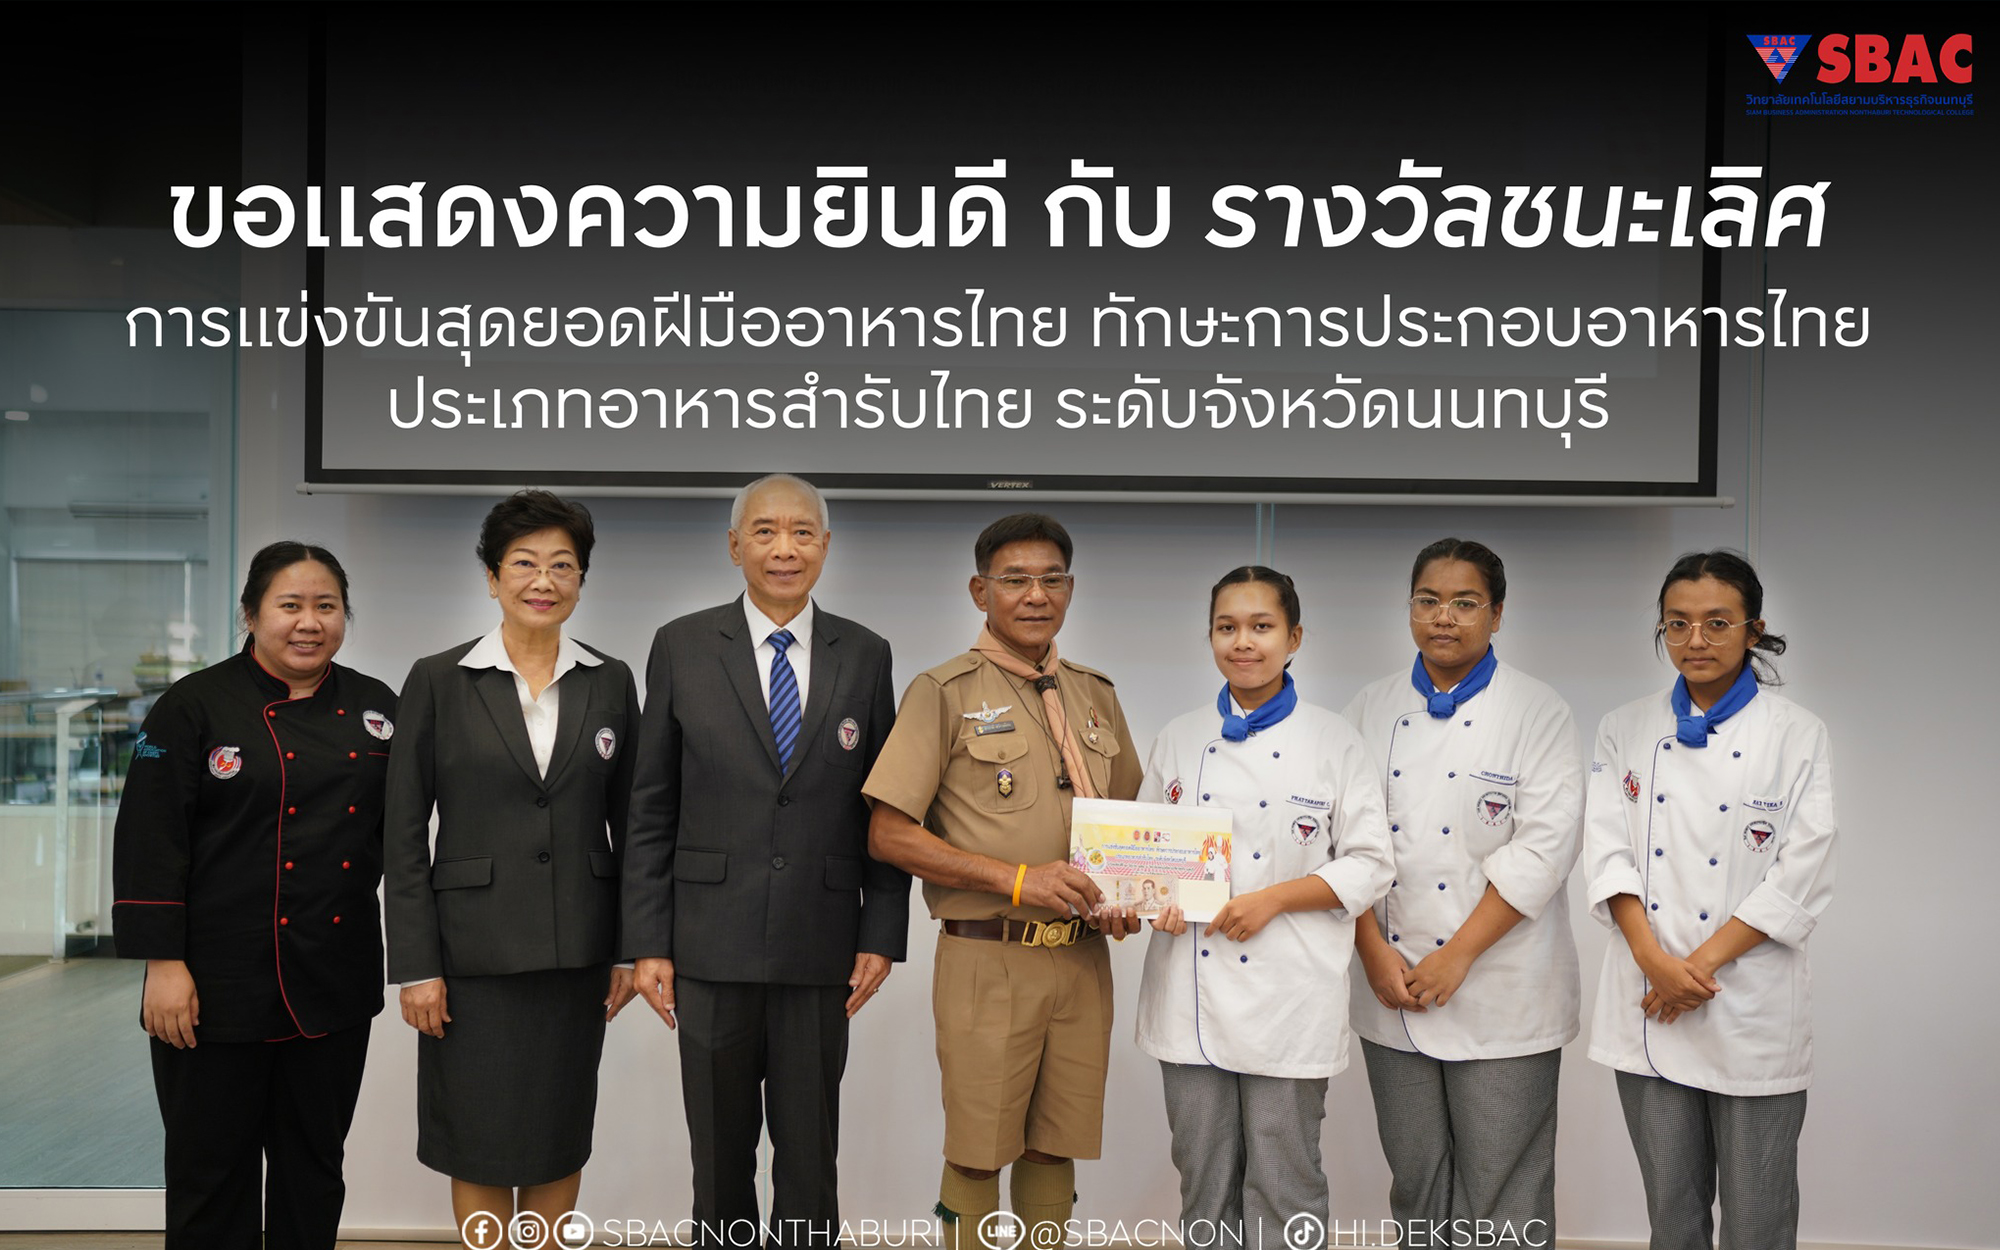 ขอแสดงความยินดีกับ รางวัลชนะเลิศ สุดยอดฝีมืออาหารไทย ทักษะการประกอบอาหารไทย ประเภทอาหารสำรับไทย ระดับจังหวัดนนทบุรี วิทยาลัยเทคโนโลยีสยามบริหารธุรกิจ นนทบุรี